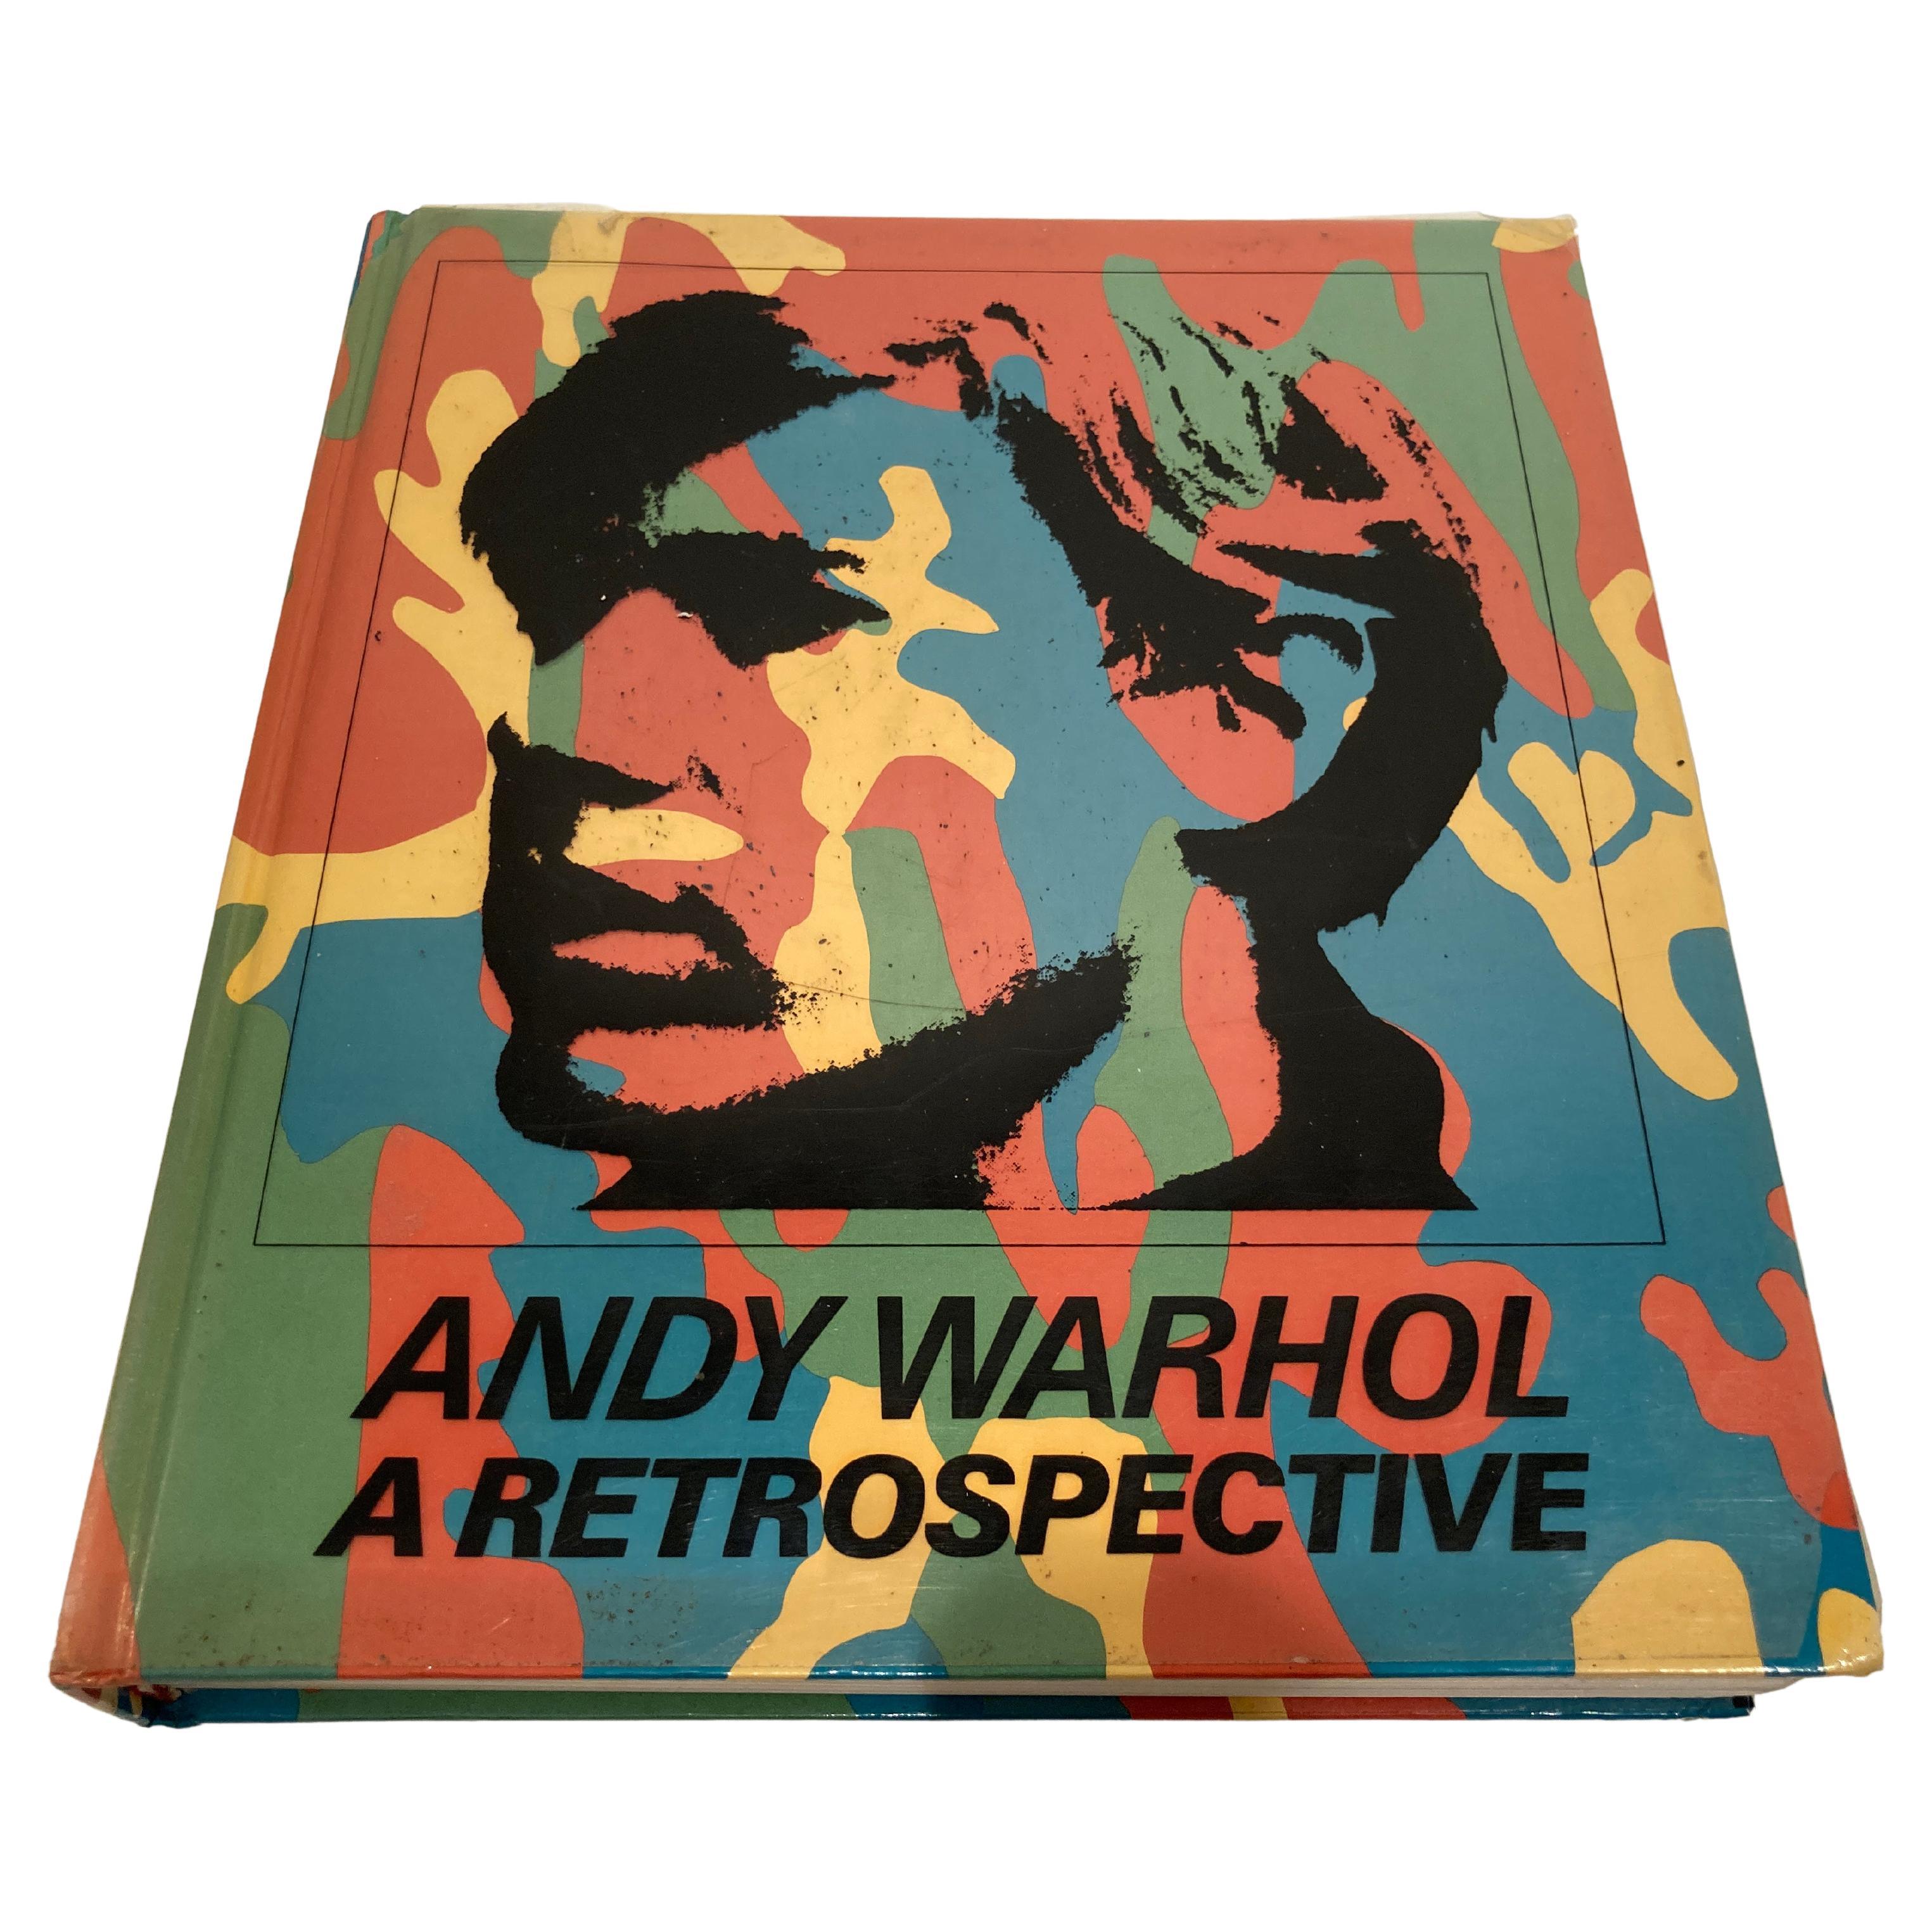 A Retrospektive, Hard-Cover-Couchtischbuch von Andy Warhol, 1989